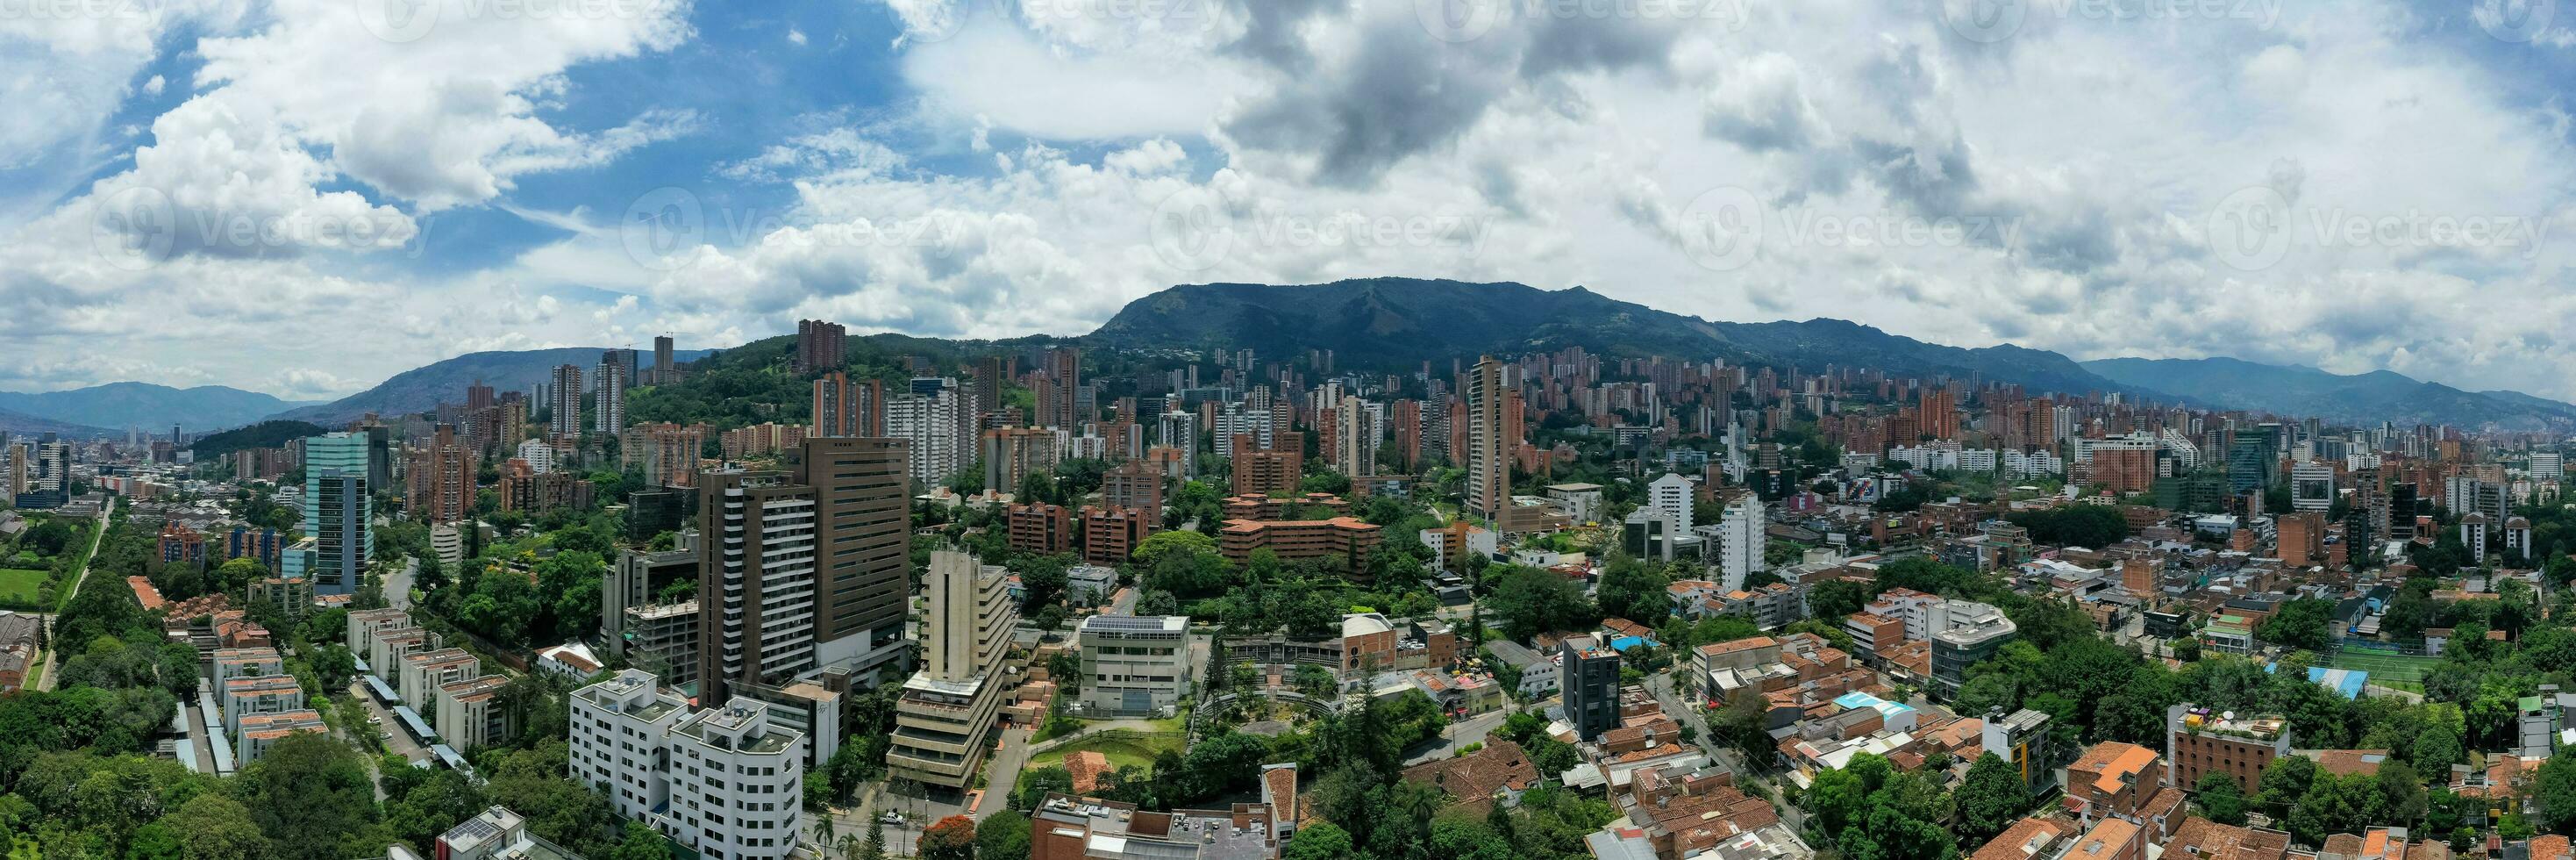 landschap - bogotá, Colombia foto